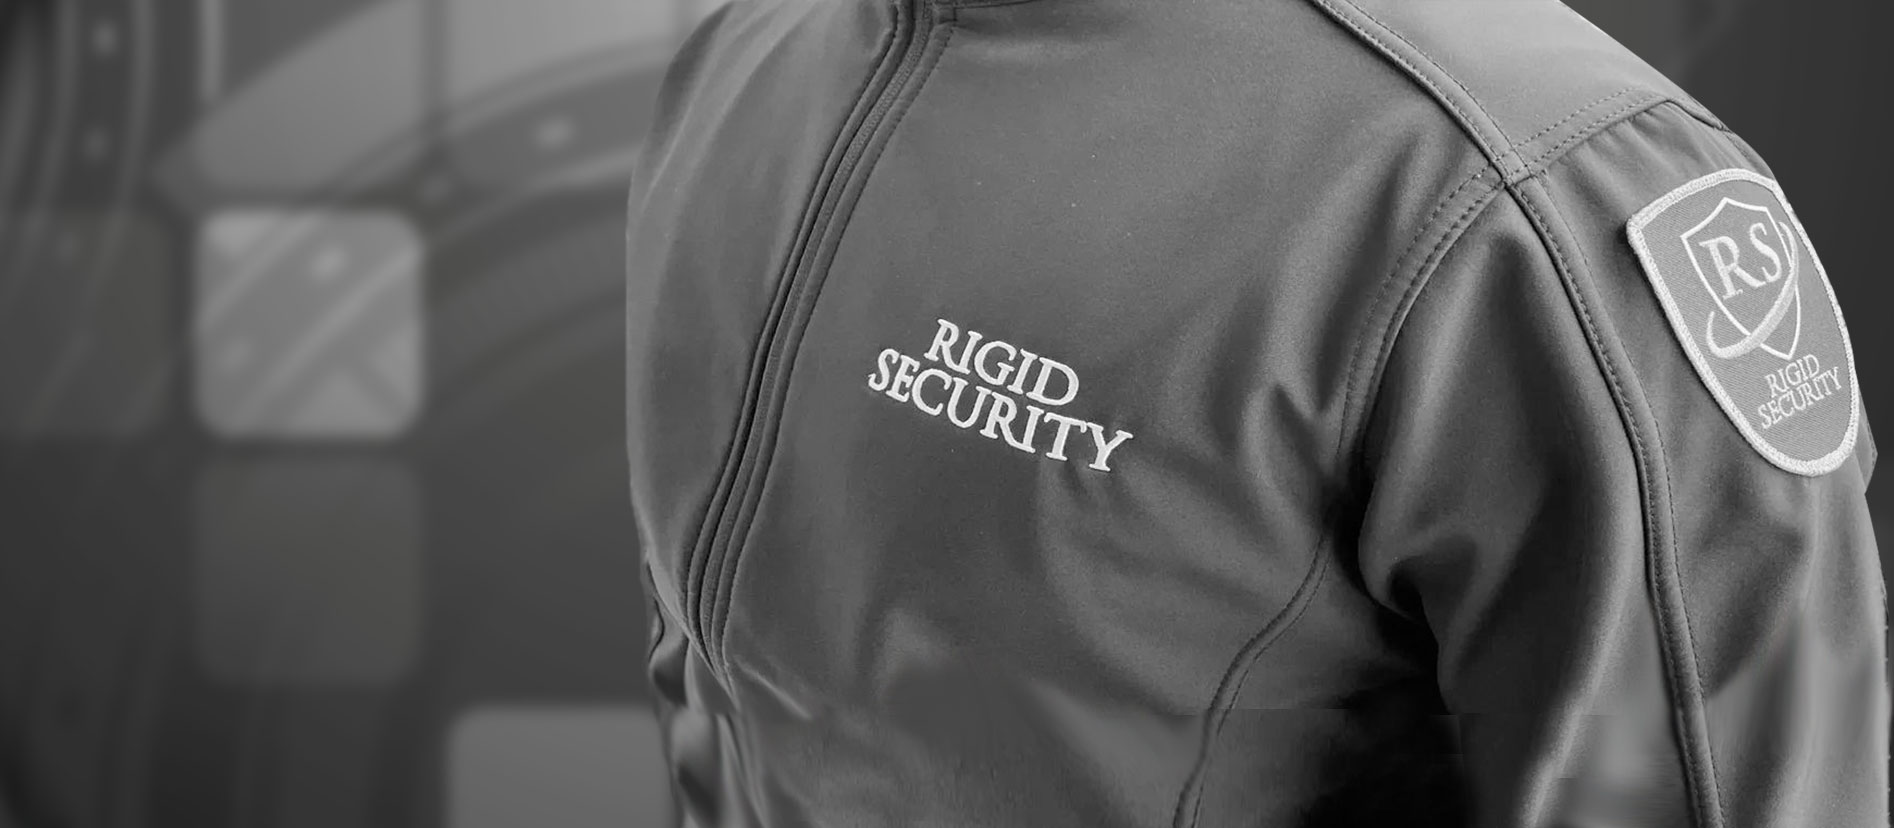 Security Guard Services Surrey BC Canada